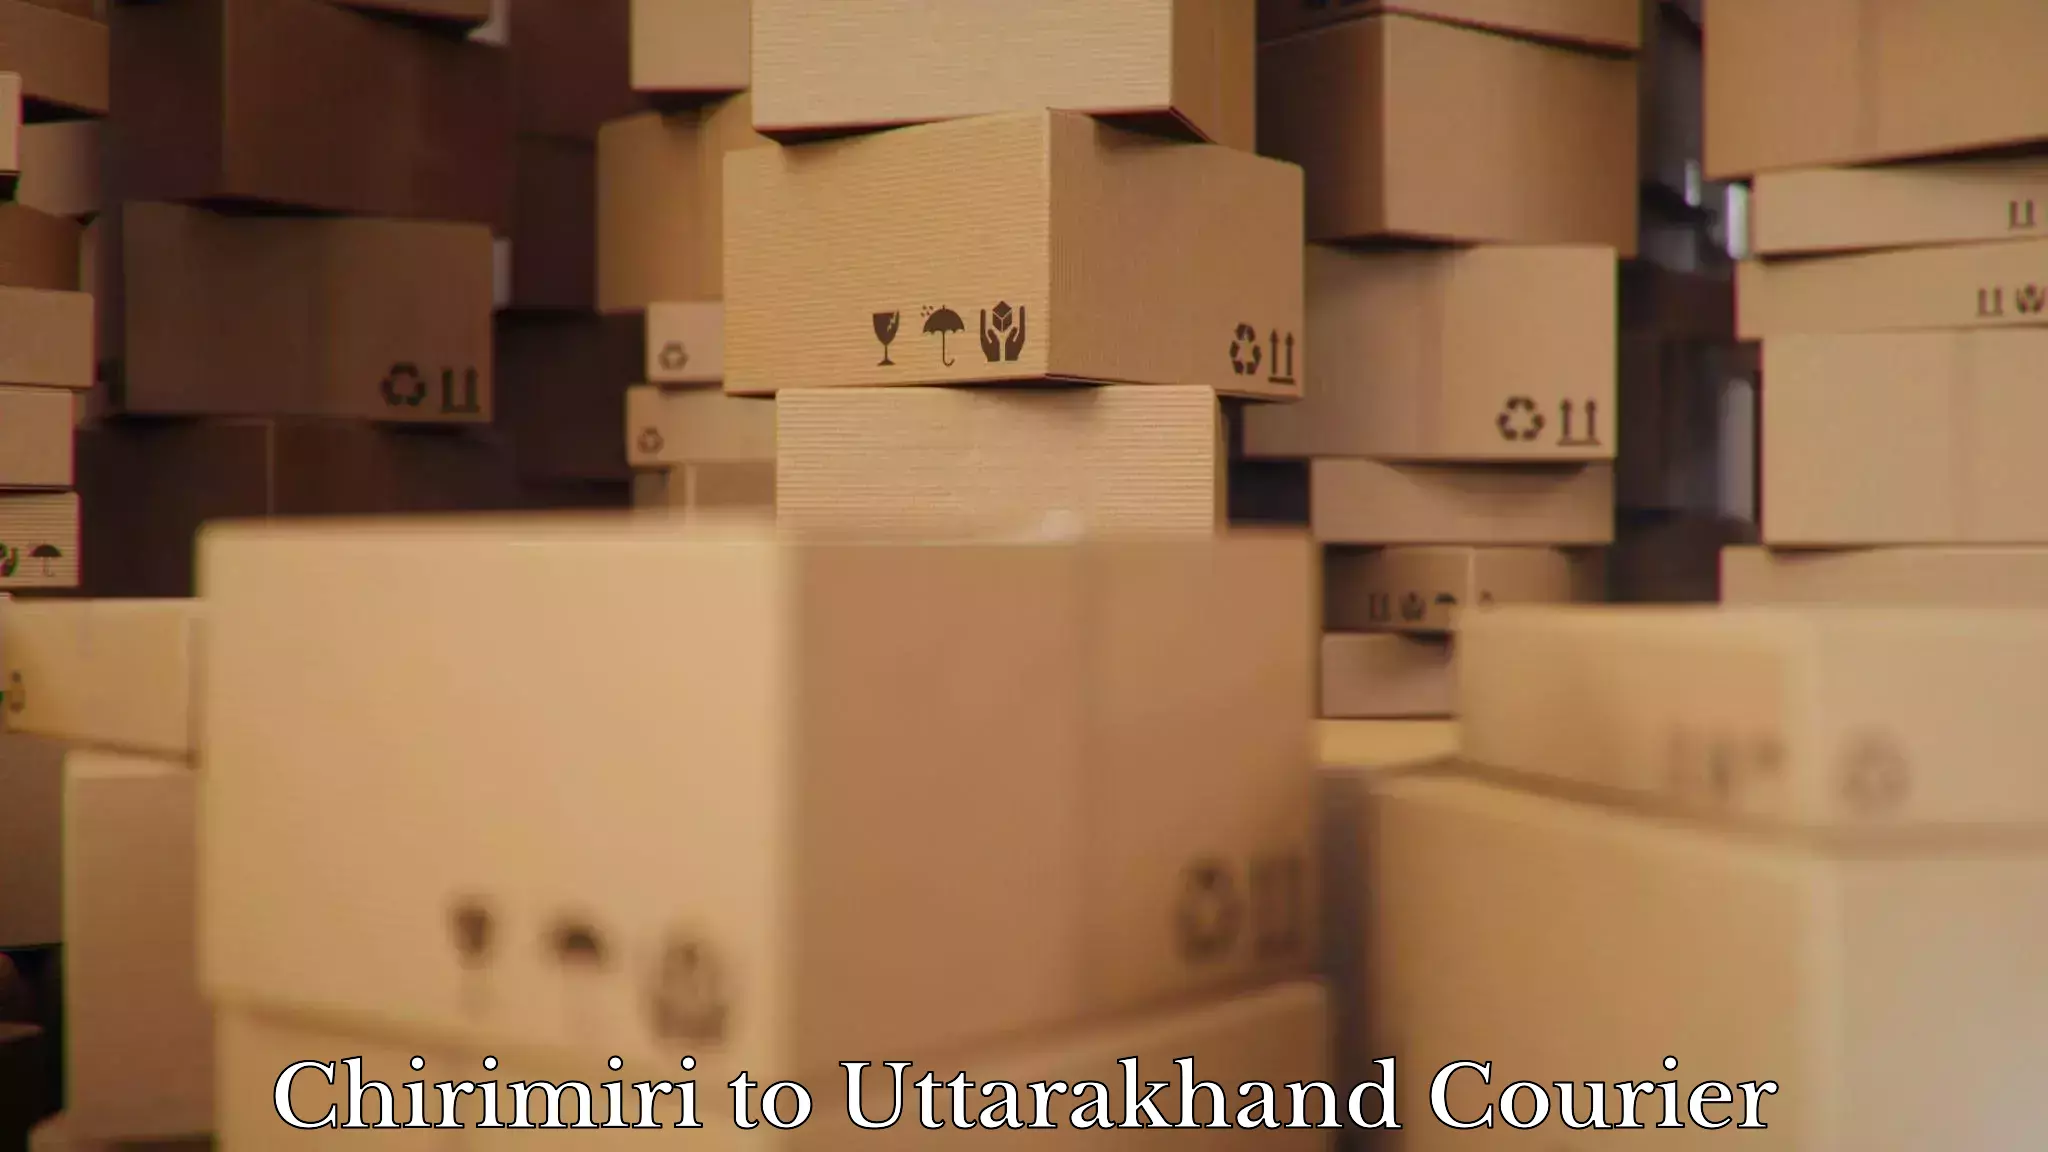 Furniture transport professionals Chirimiri to Gumkhal